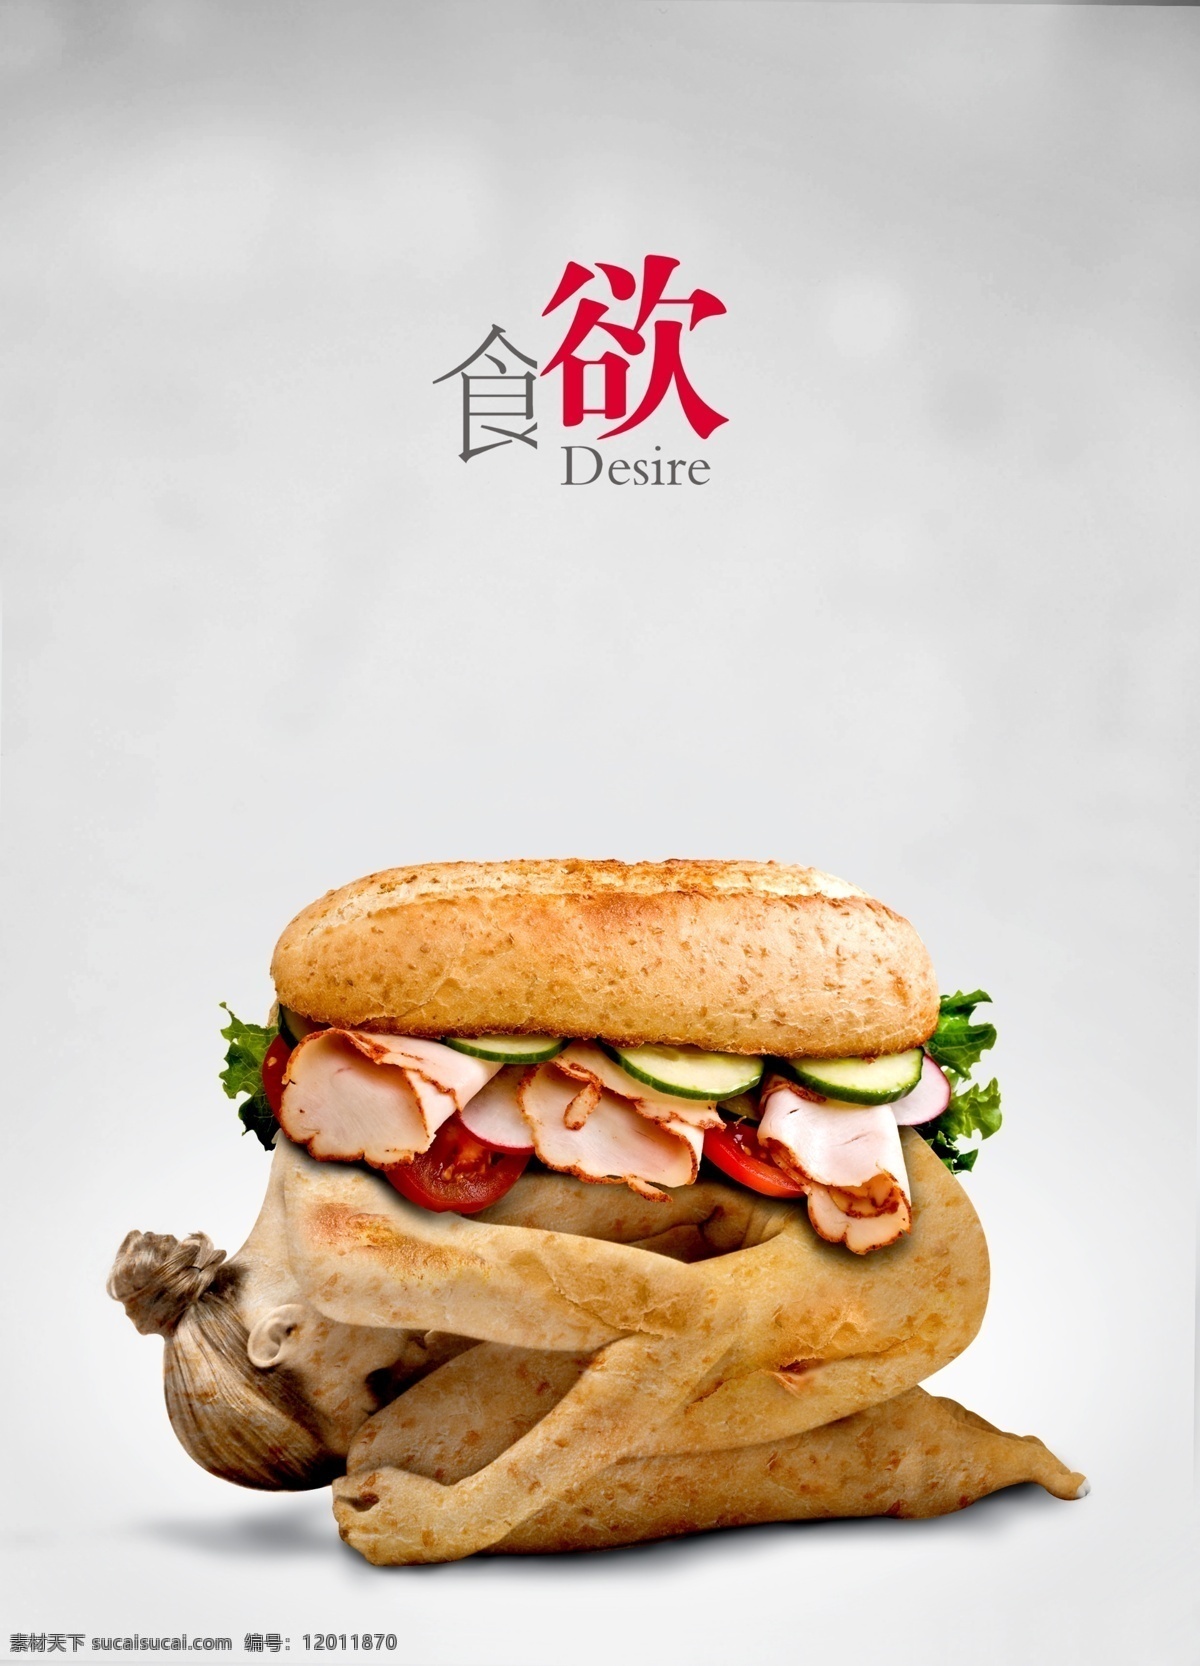 创意海报 广告设计模板 美女 面包 模特 食物 食欲 创意 海报 模板下载 欲望 人体汉堡 源文件 psd源文件